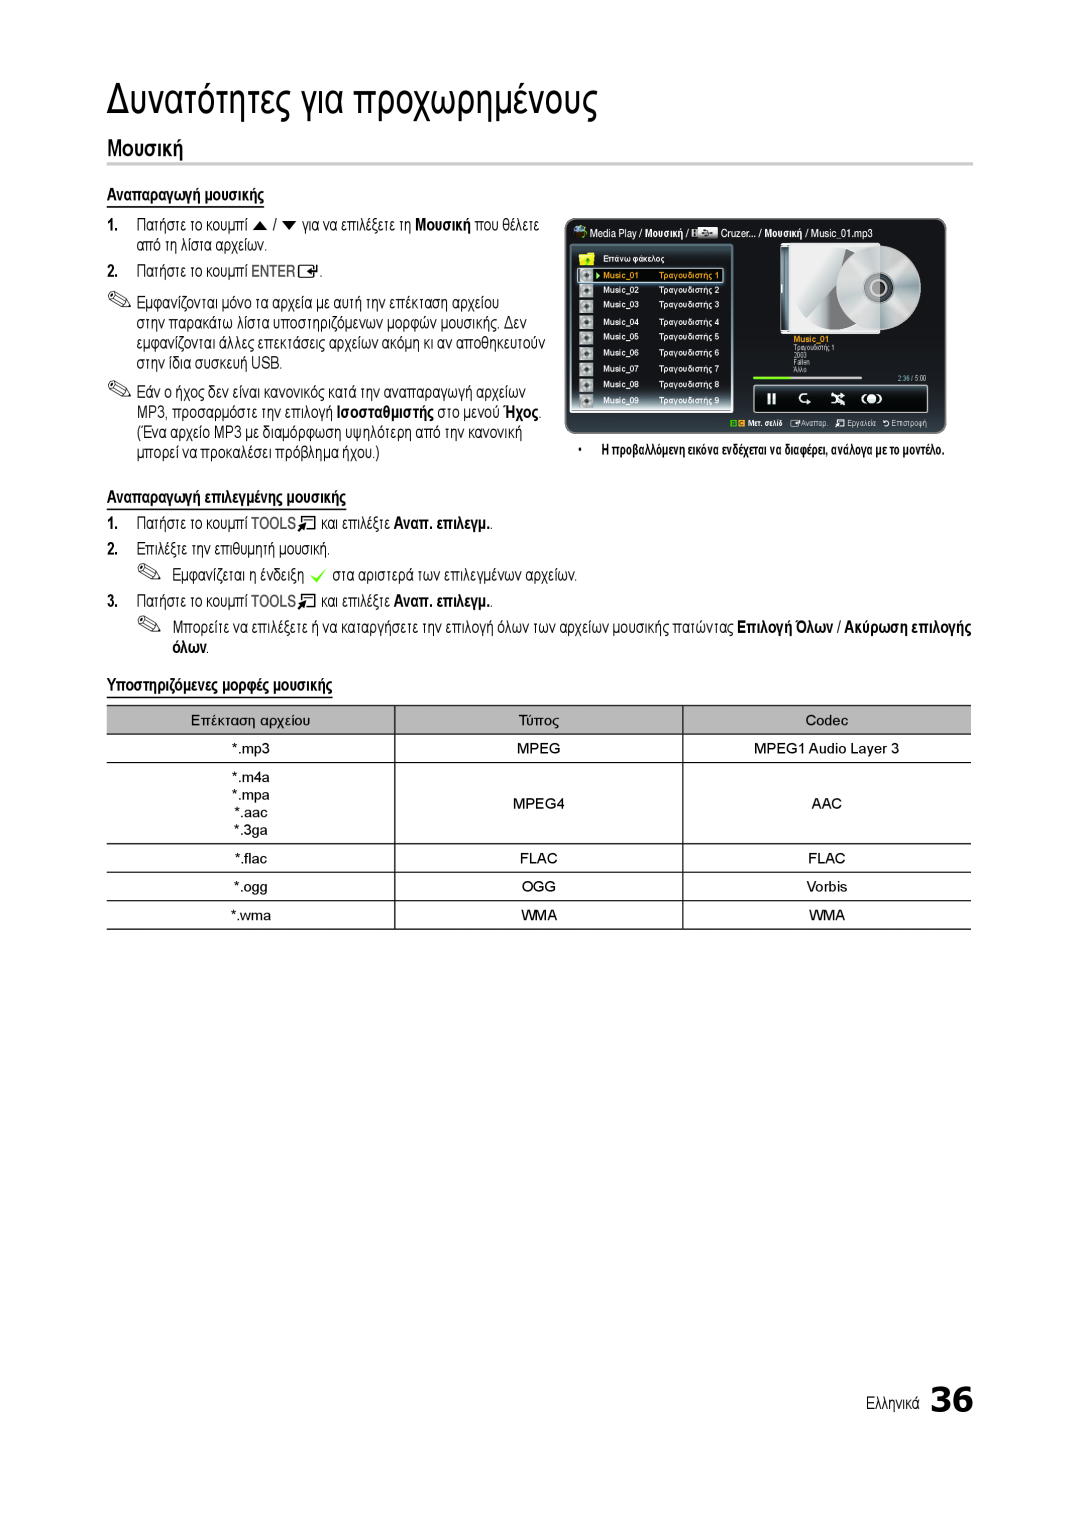 Samsung LT22B350EW/EN manual Μουσική, Δυνατότητες για προχωρημένους, Αναπαραγωγή μουσικής, Αναπαραγωγή επιλεγμένης μουσικής 